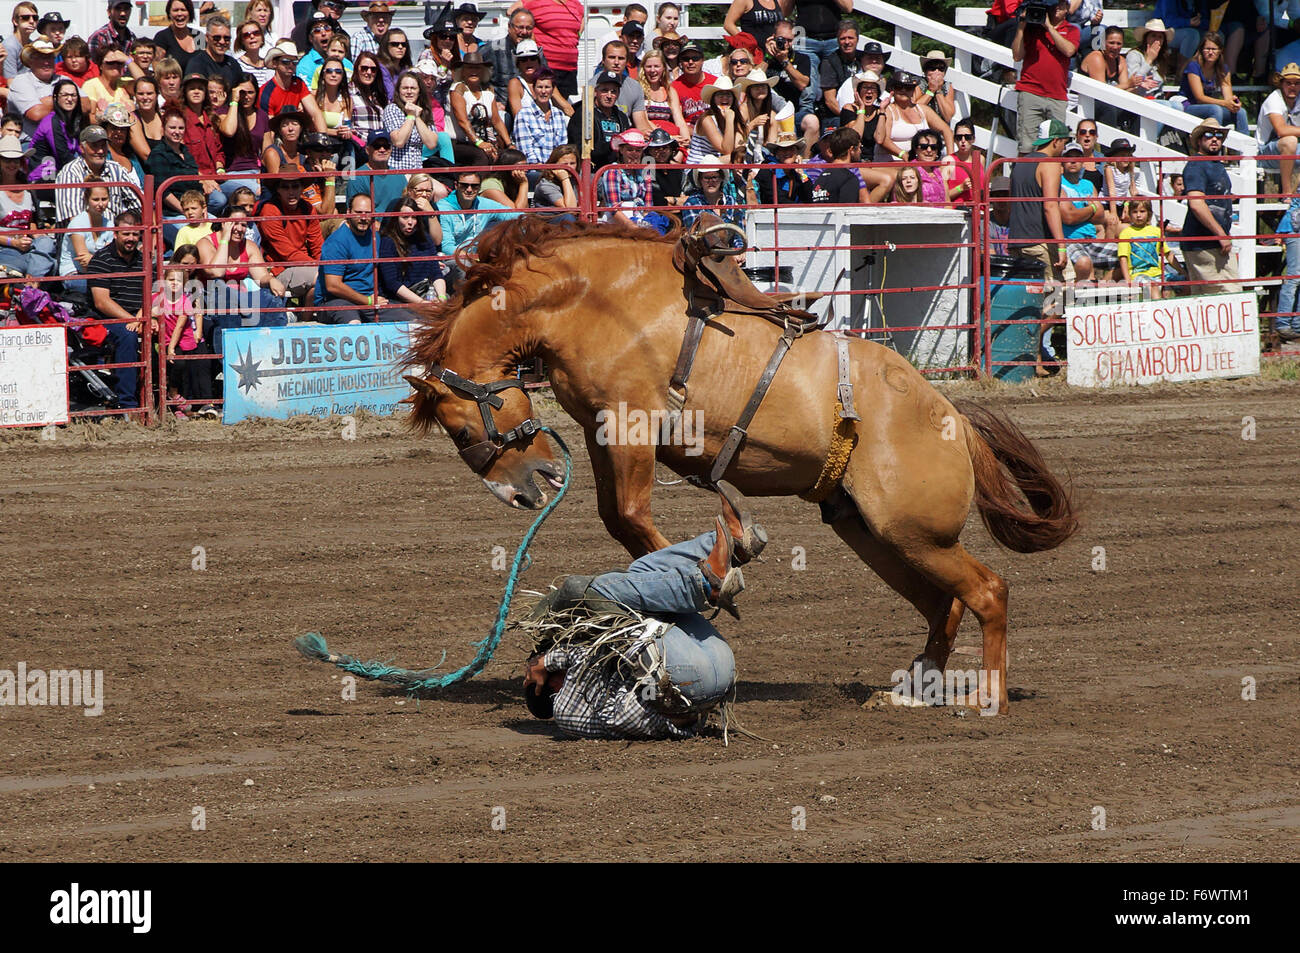 Cowboy, sich selbst zu schützen, nachdem er sträubte sich ab beim lokalen Rodeo Bucking Horse Wettbewerb Stockfoto